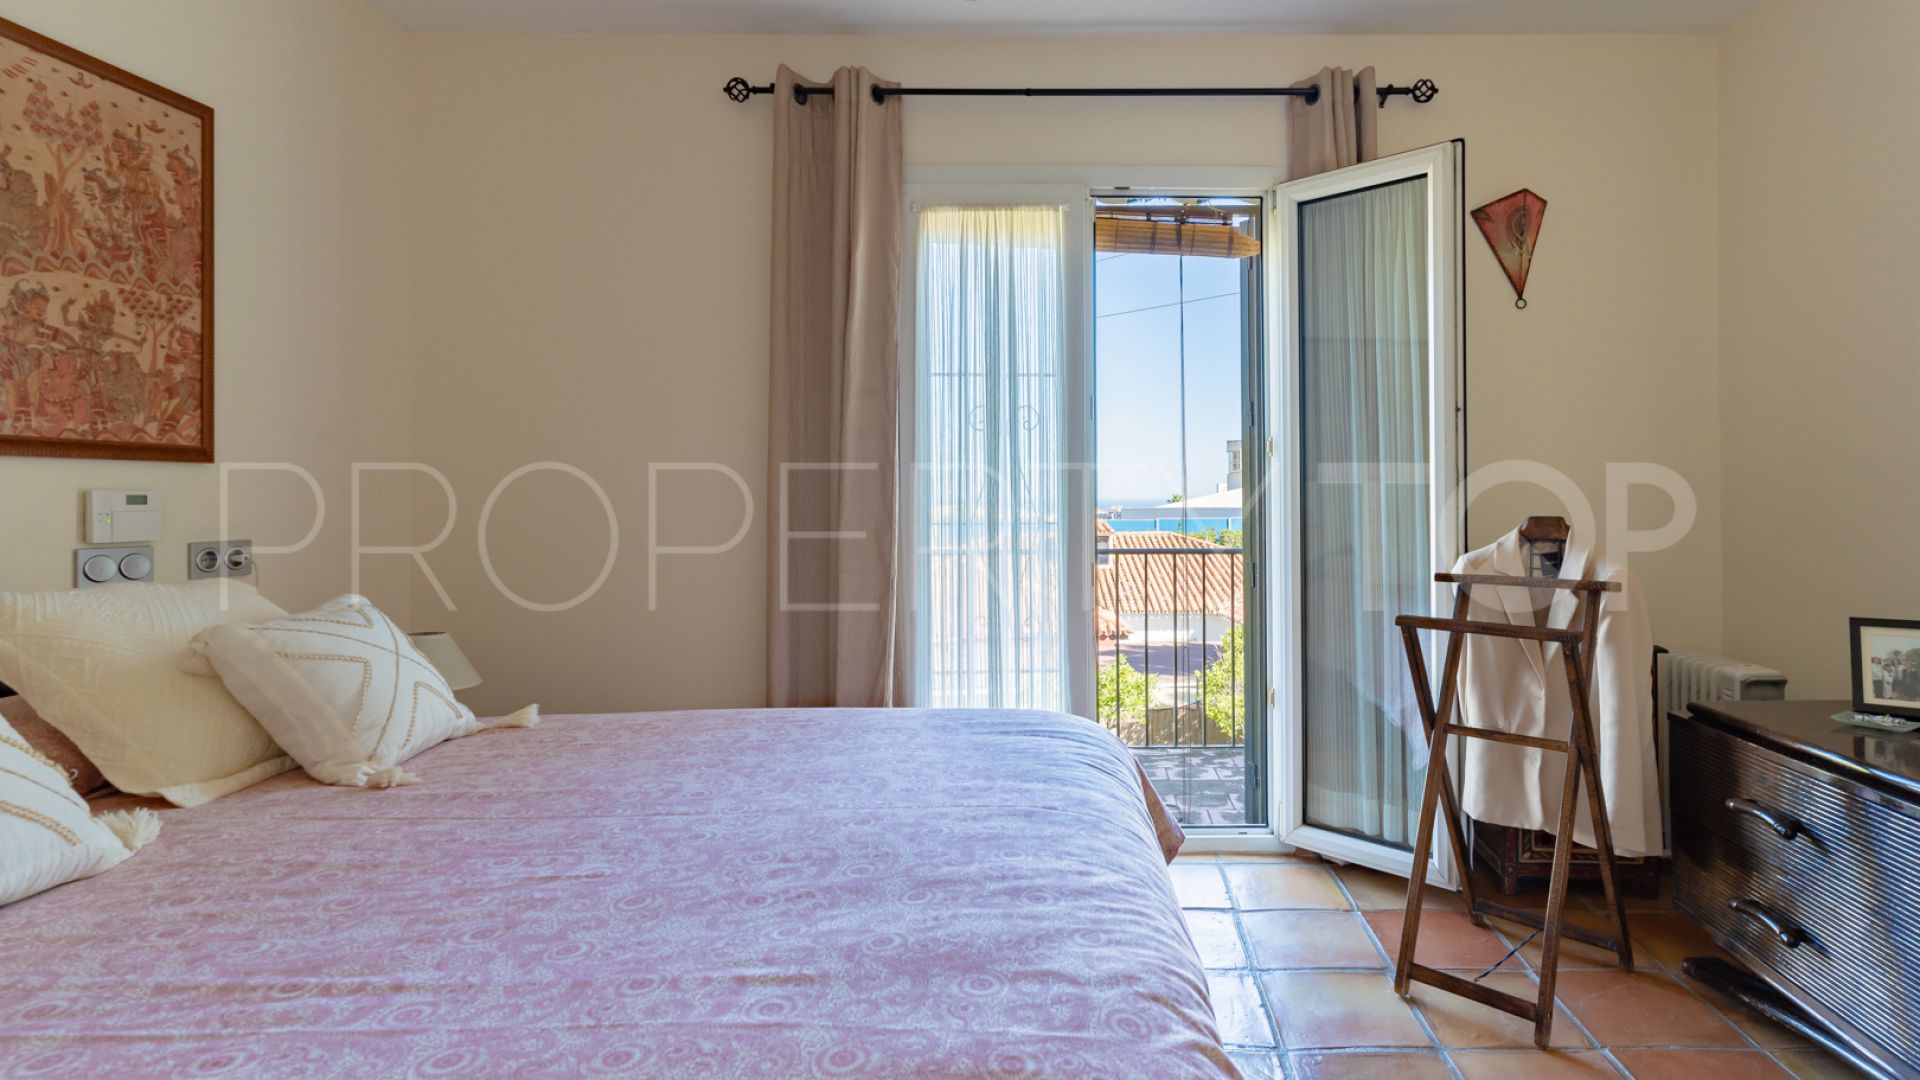 4 bedrooms villa in Valdeolletas for sale